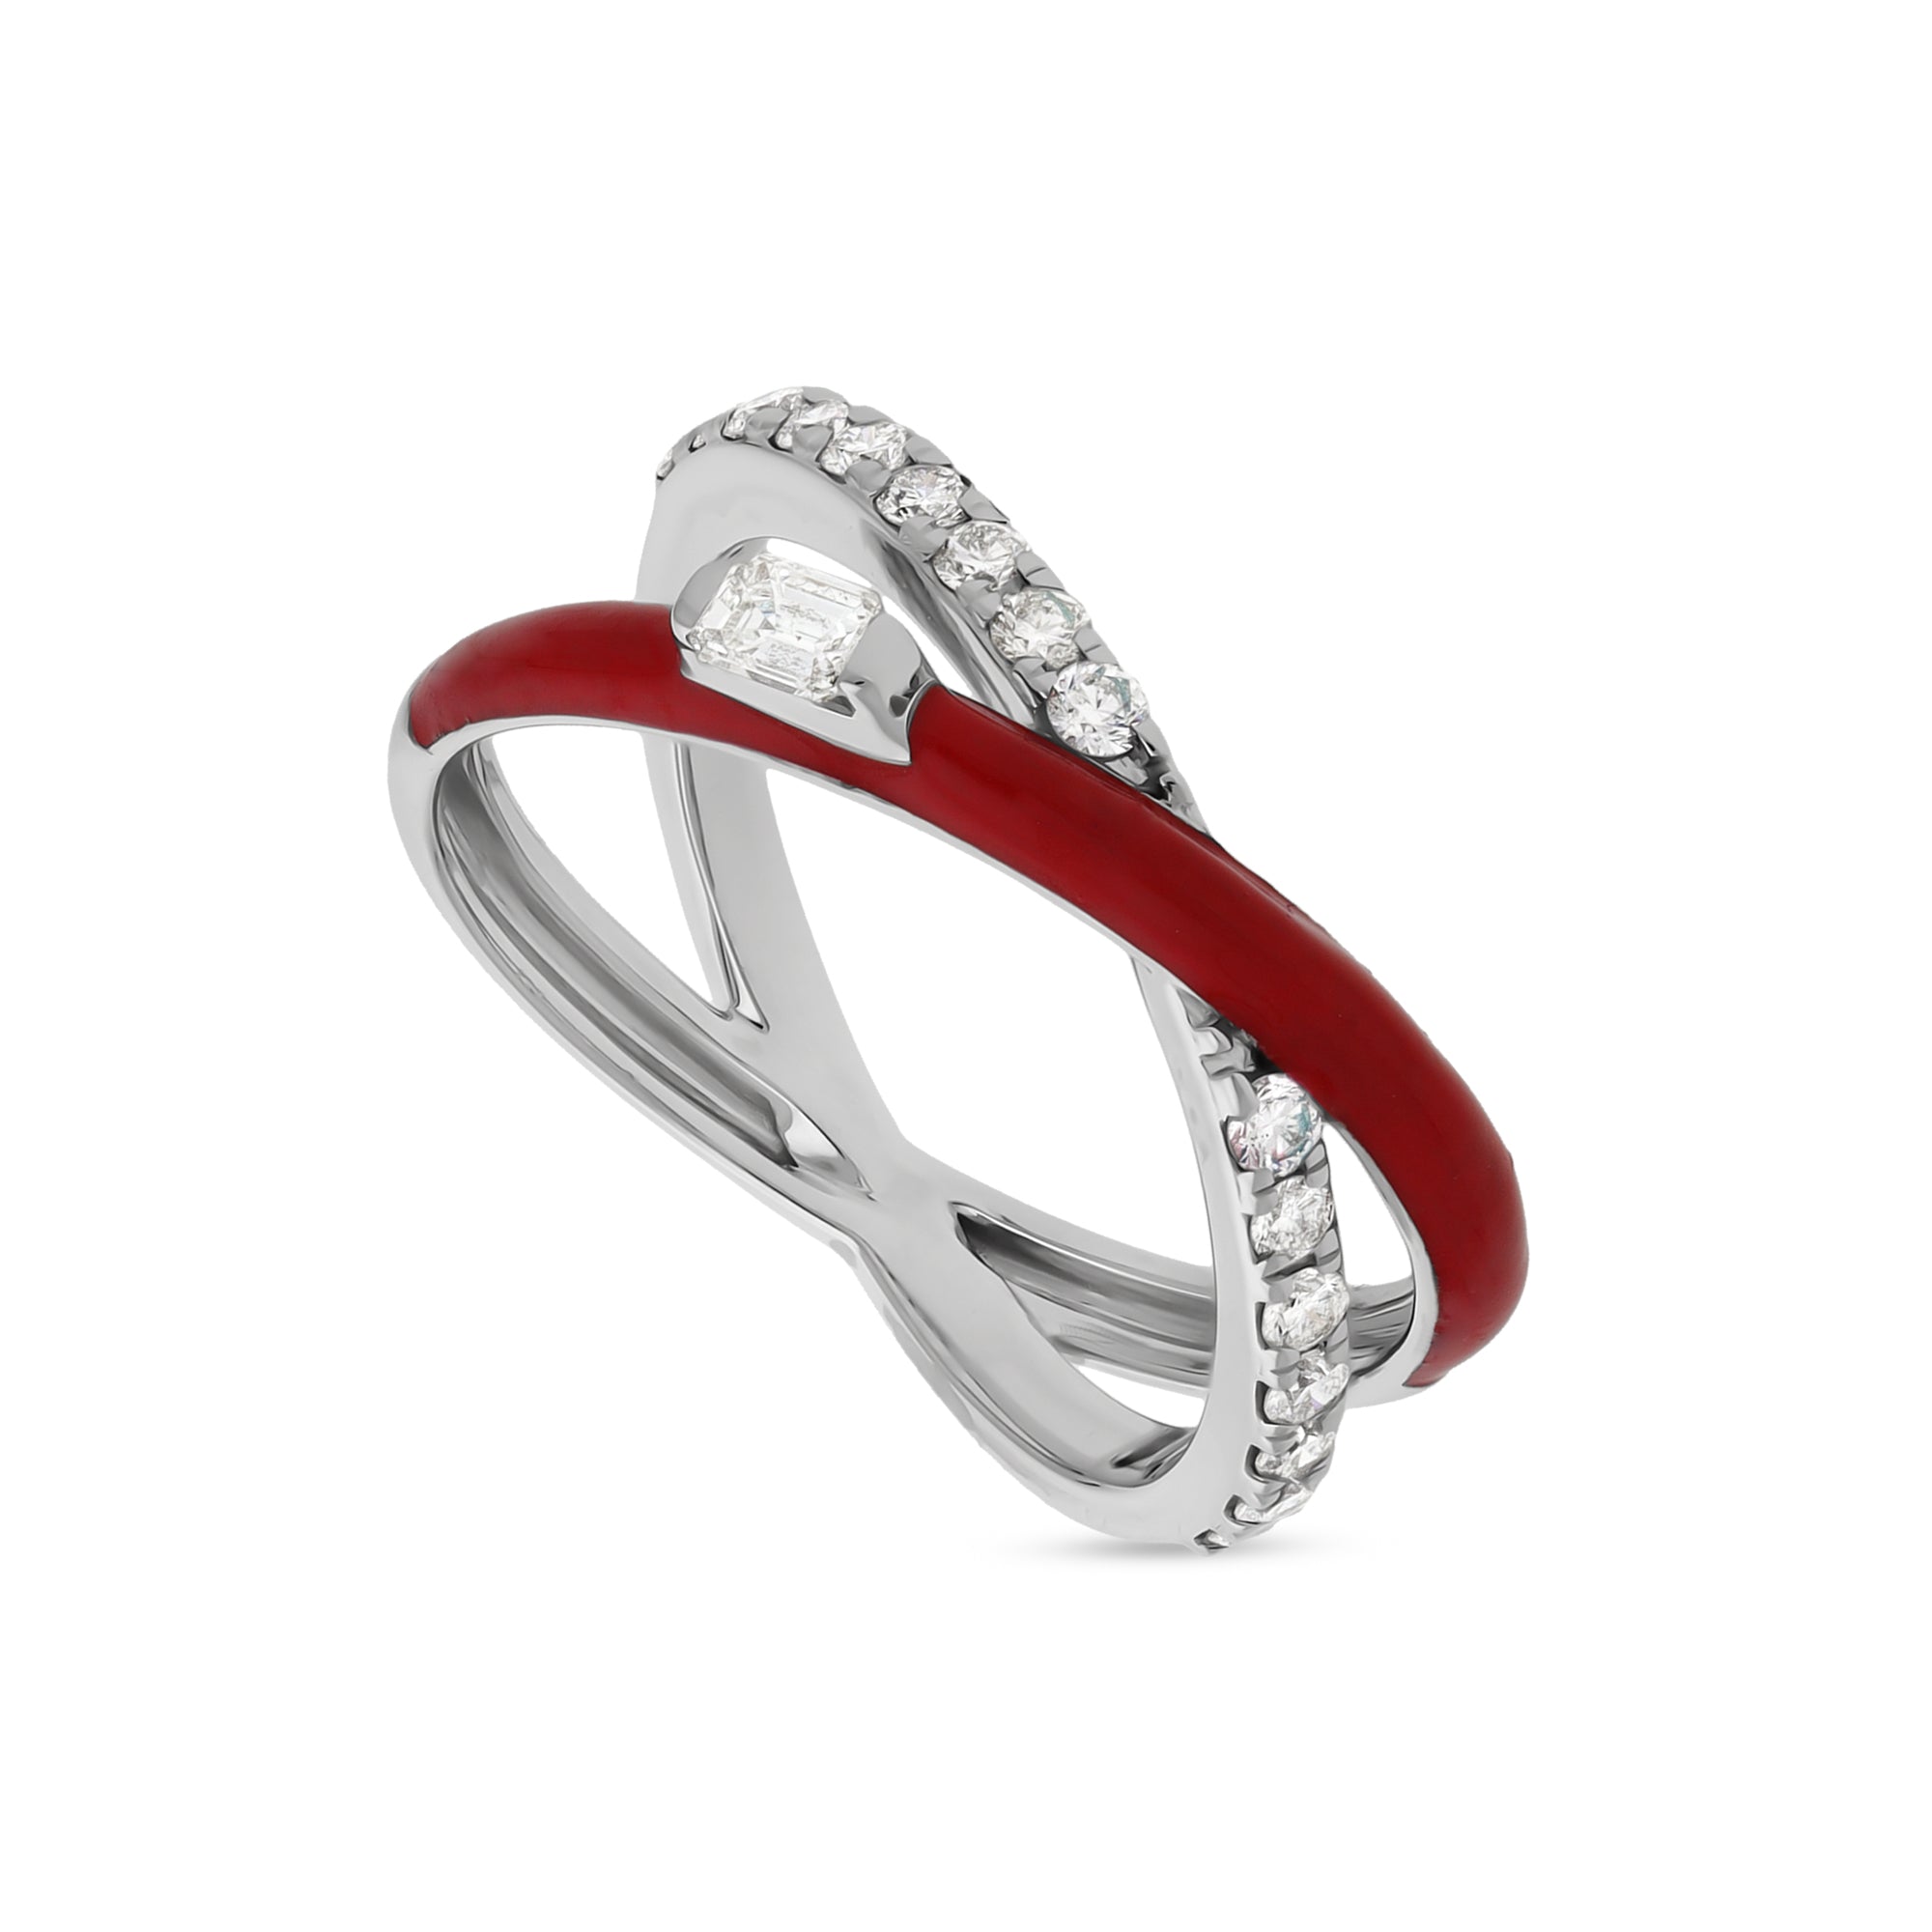 Повседневное кольцо из белого золота с красной эмалью и бриллиантами изумрудной формы крест-накрест 